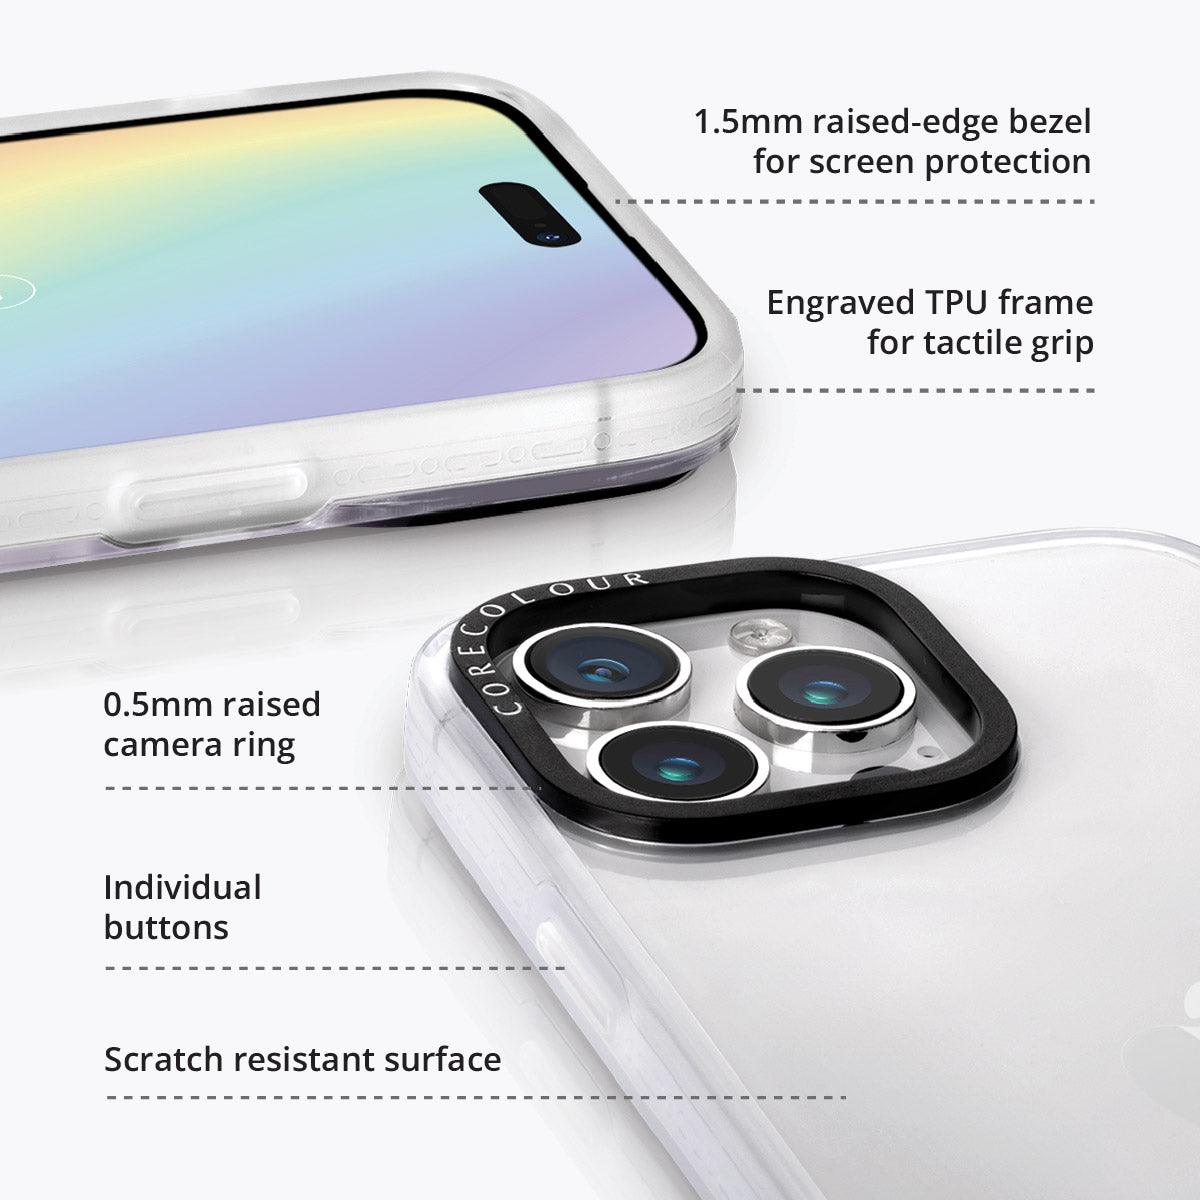 iPhone 15 Pro Max Colours of Wonder Phone Case MagSafe Compatible - CORECOLOUR AU